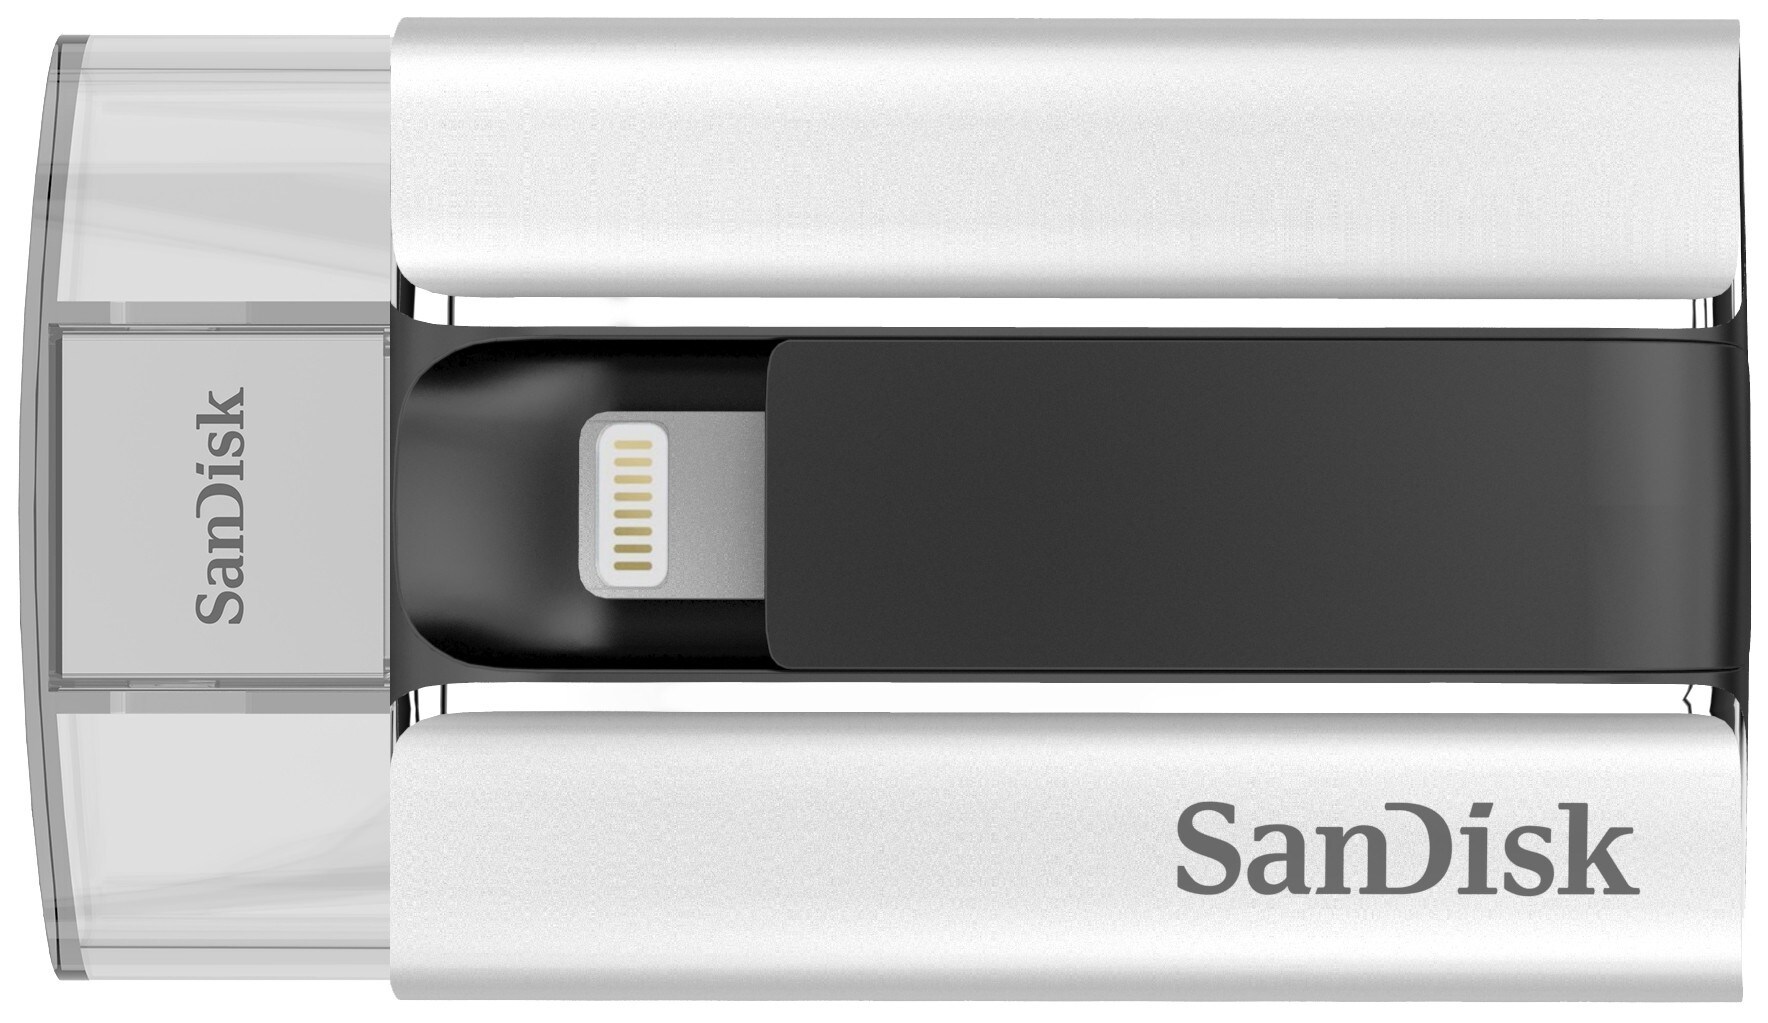 SanDisk iXpand 32 GB lagringsenhed til iPad/iPhone | Elgiganten